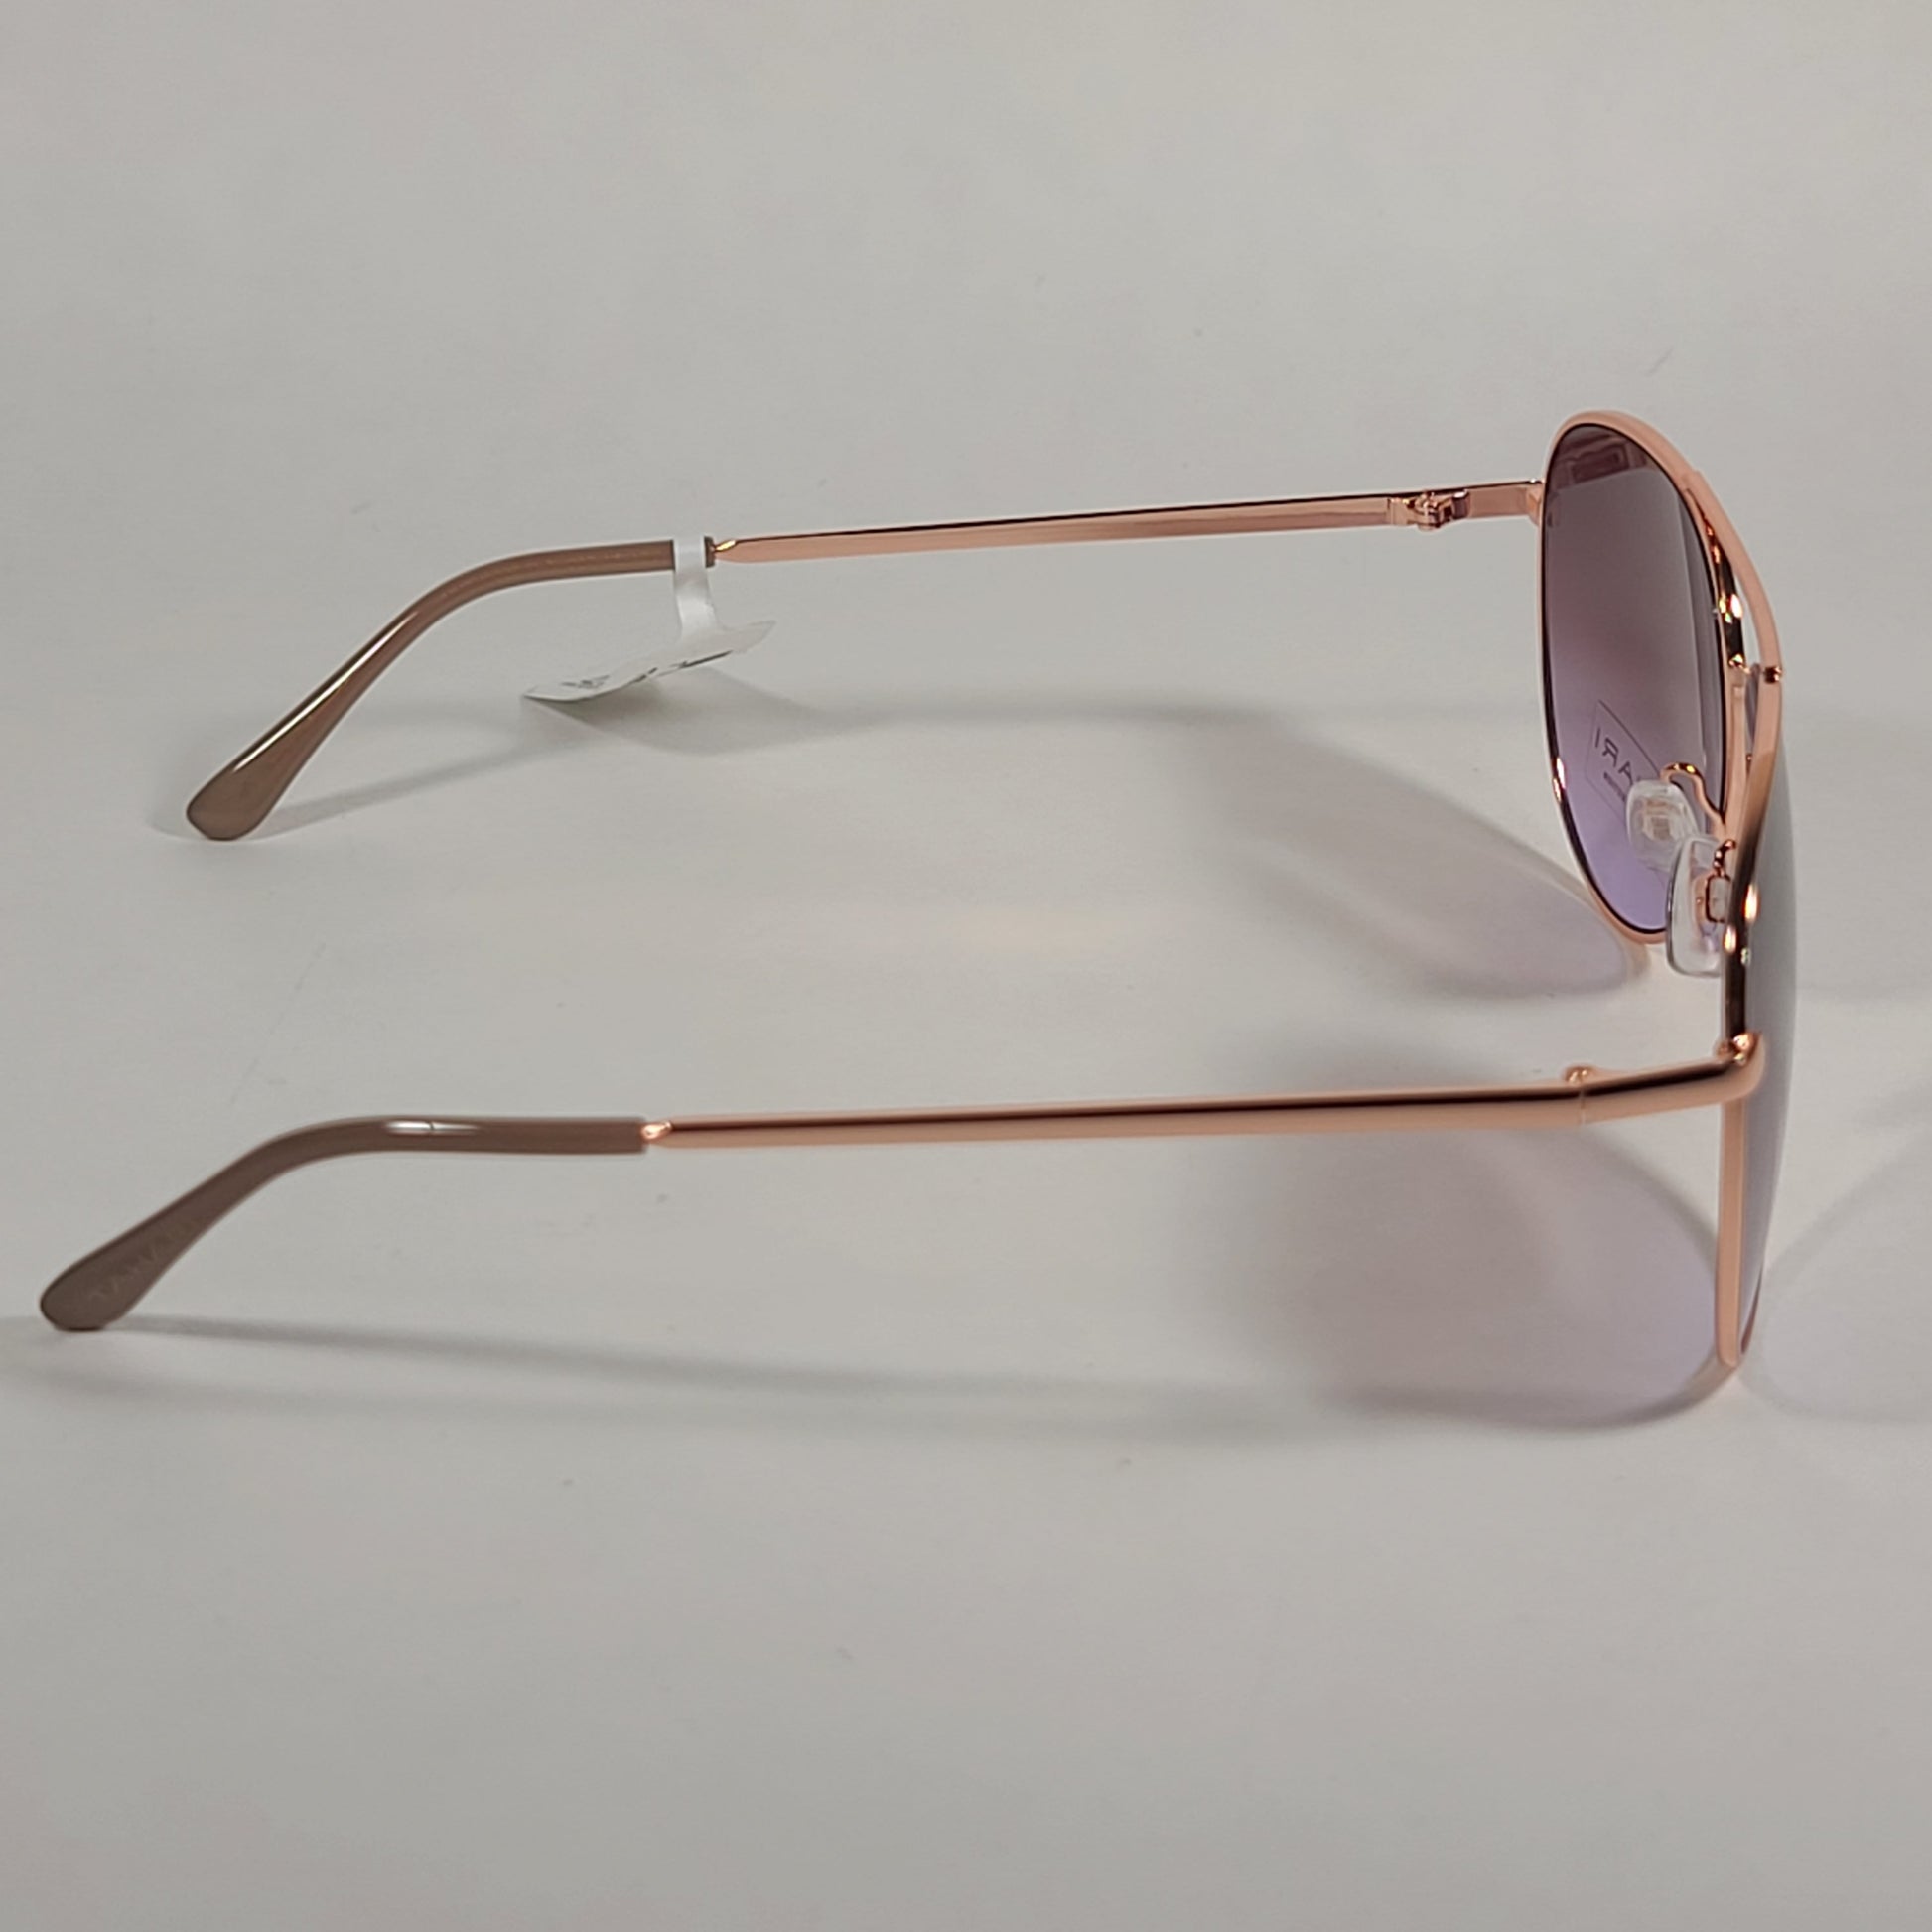 Tahari Aviator Sunglasses Rose Gold Nude Pink Brown Gradient Lens TH807 NDRGD - Sunglasses